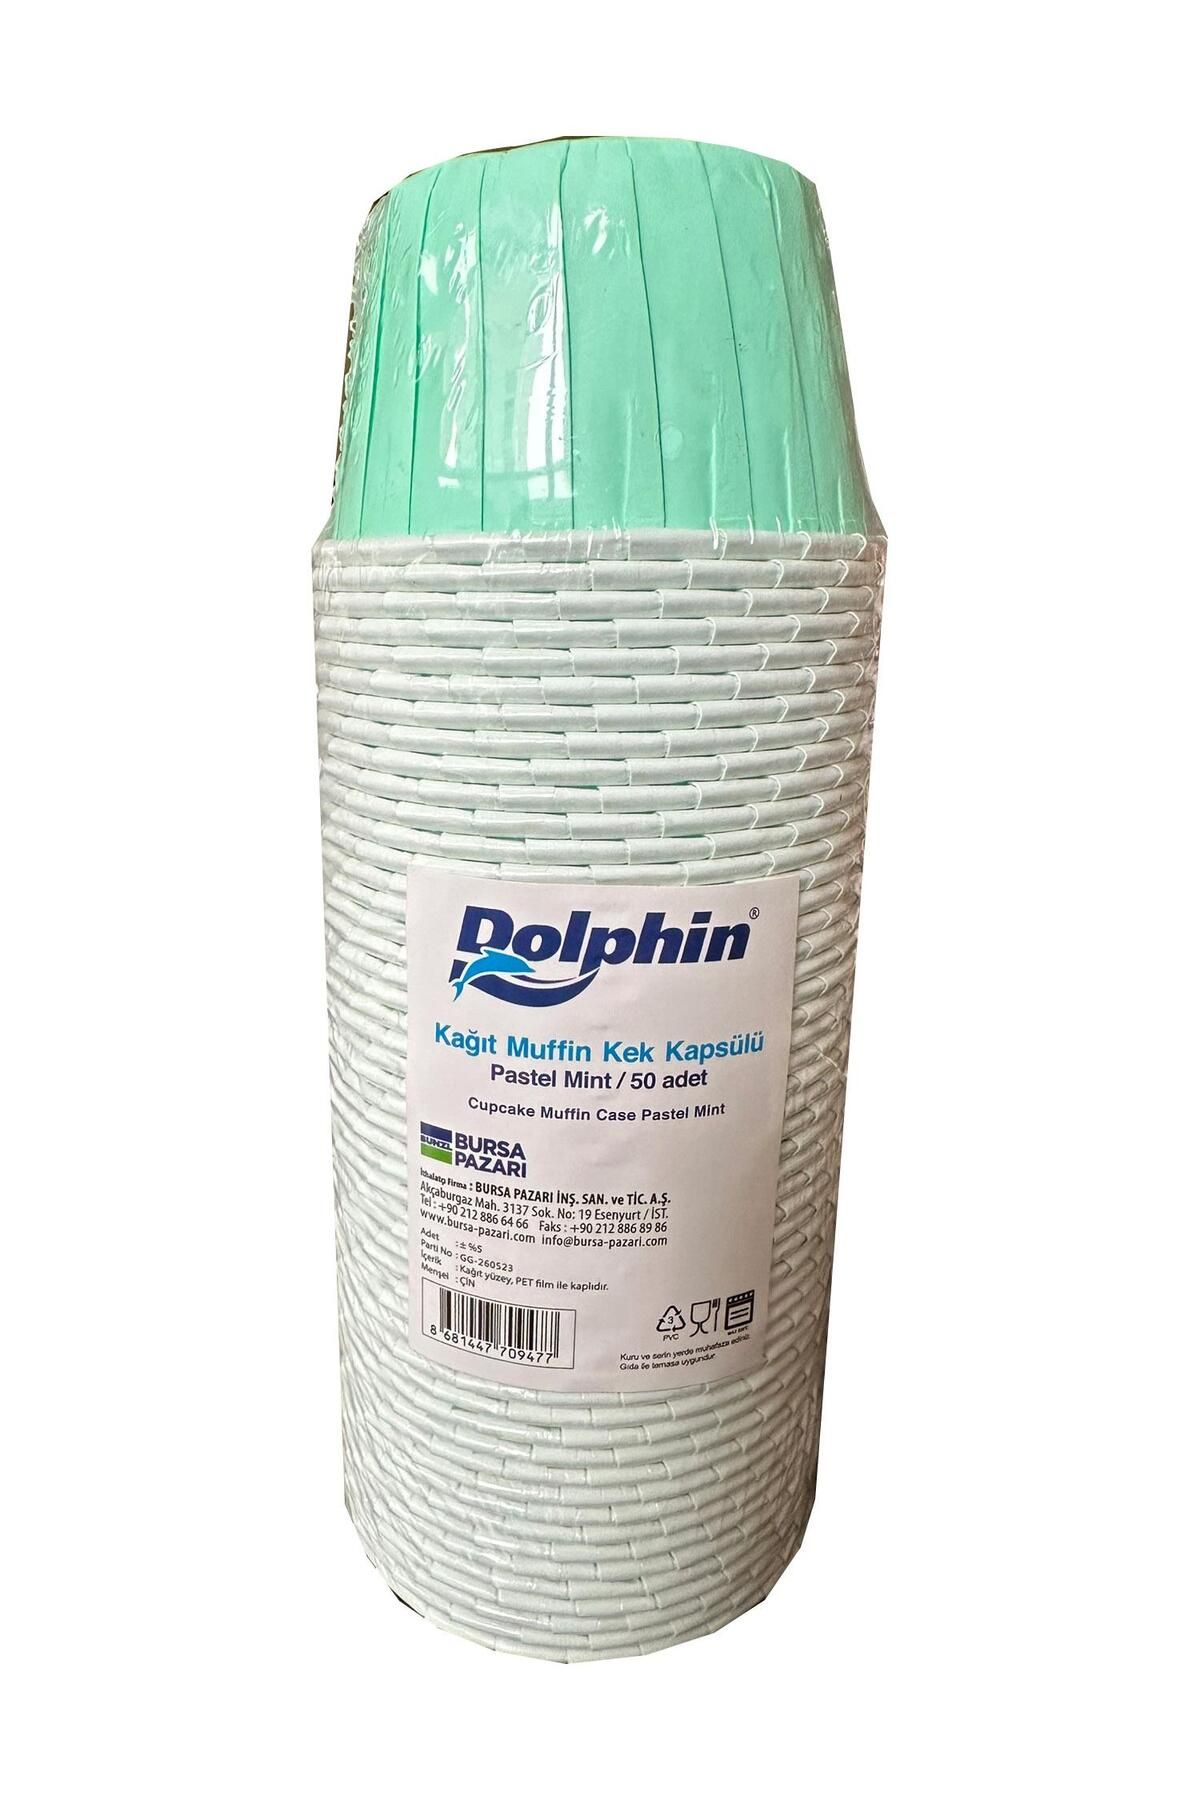 Dolphin Muffin Kağıt Karton Pastel Yeşil Cupcake Kek Kalıbı Kapsülü Kabı - 50 Adetlik 1 Paket